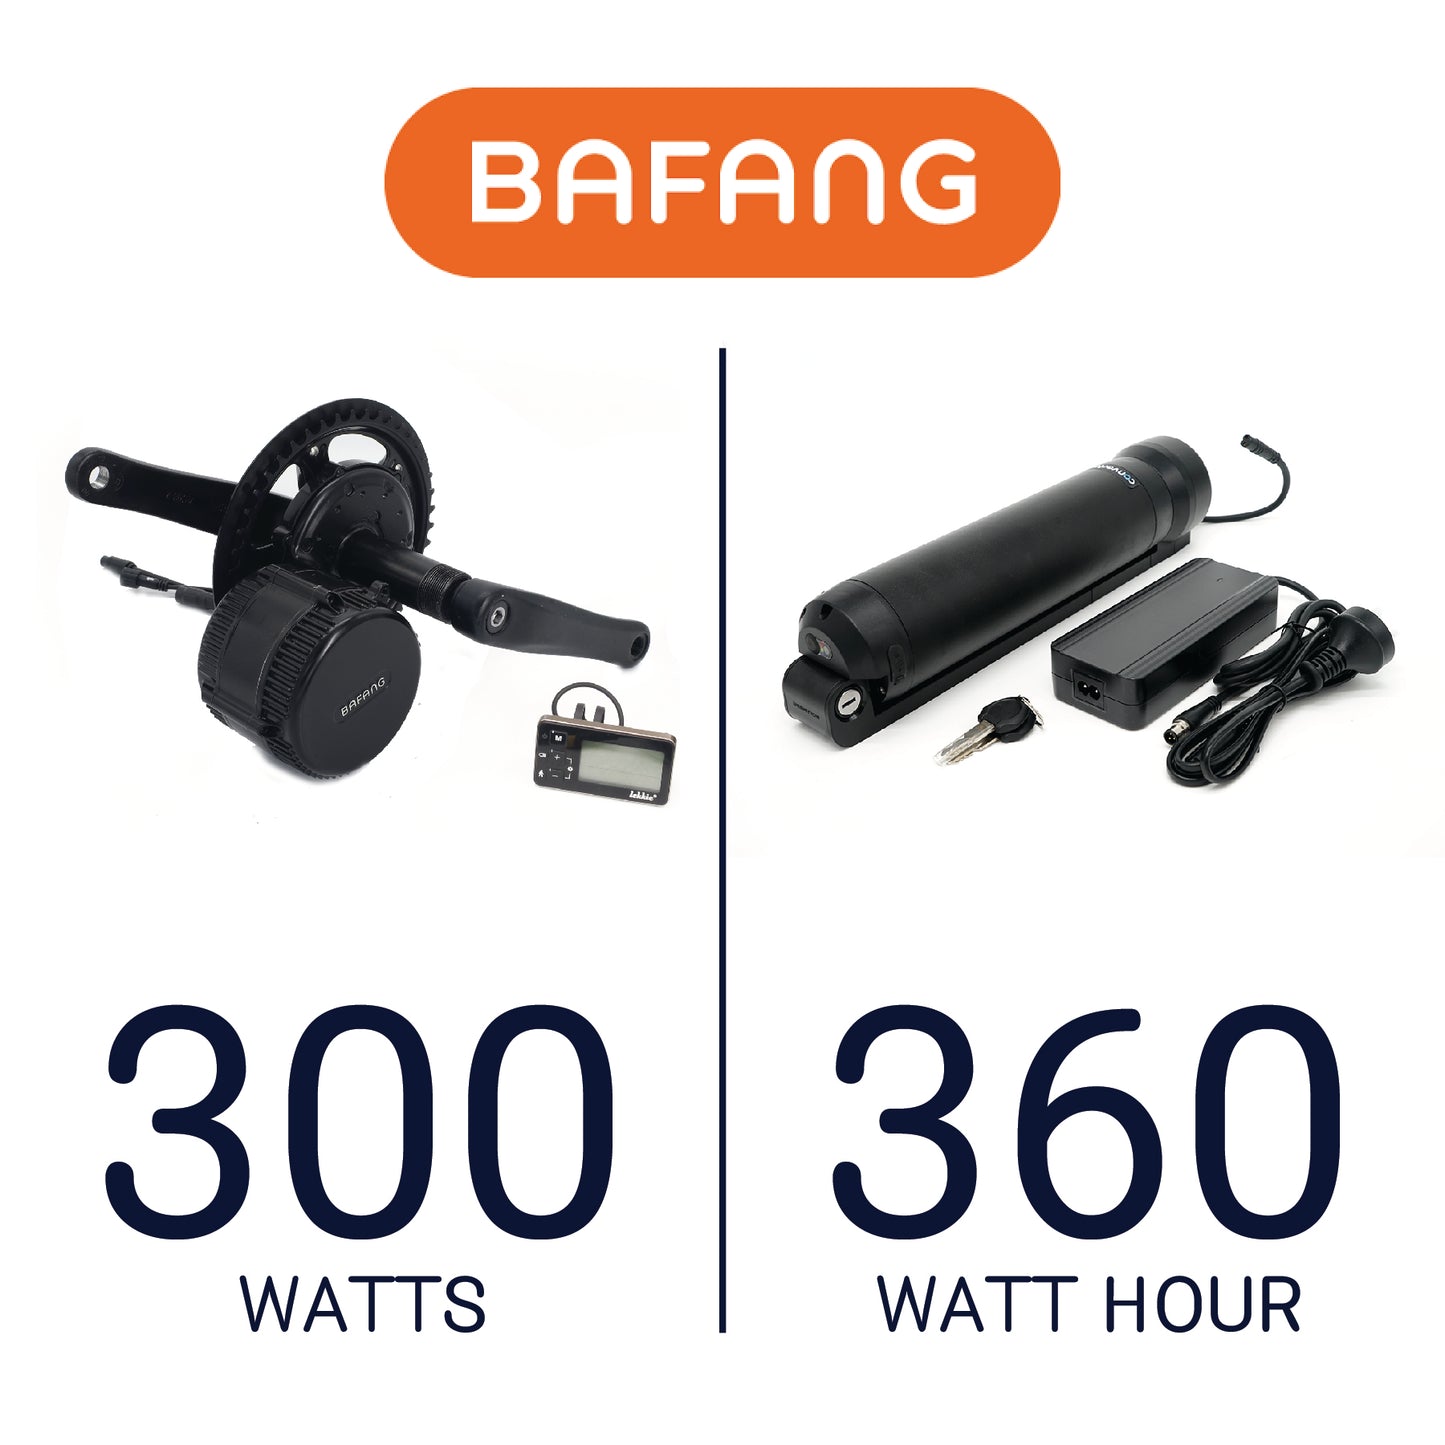 Bafang 300W, 360Wh Conversion Kit